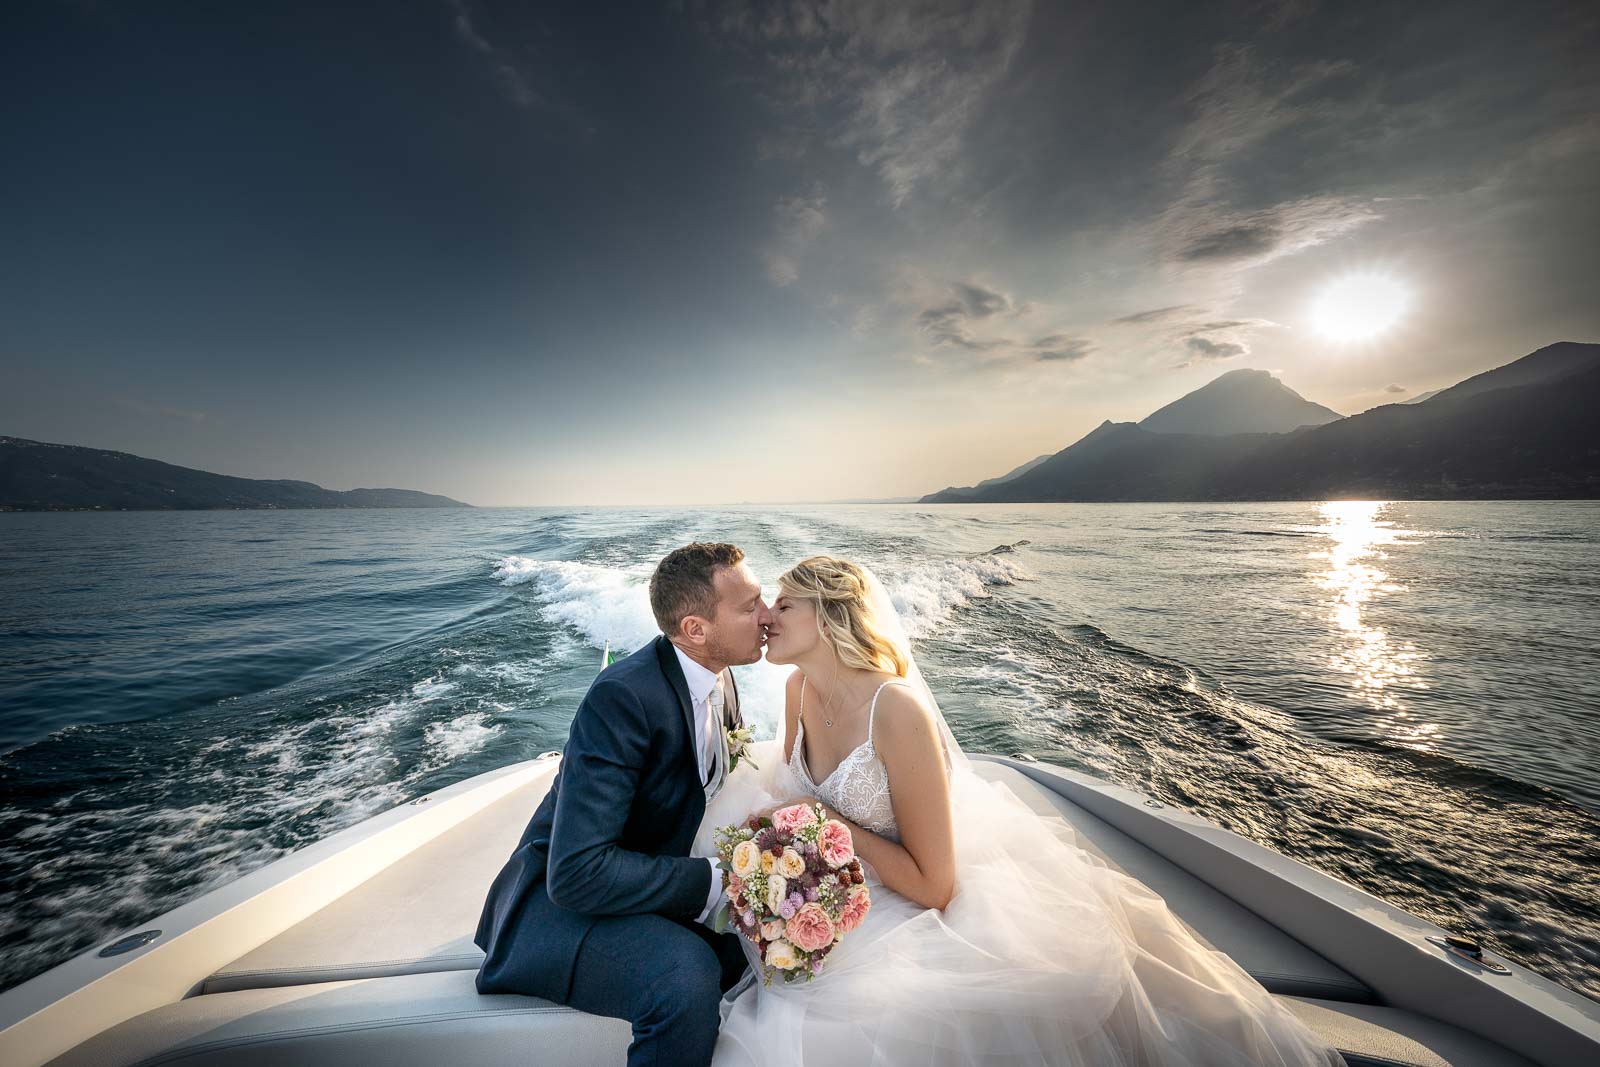 Matrimoni sul Lago di Como,Fotografo Matrimonio Lago di Como,Fotografo Matrimonio Lago Maggiore,Fotografo Matrimonio Lago di Iseo